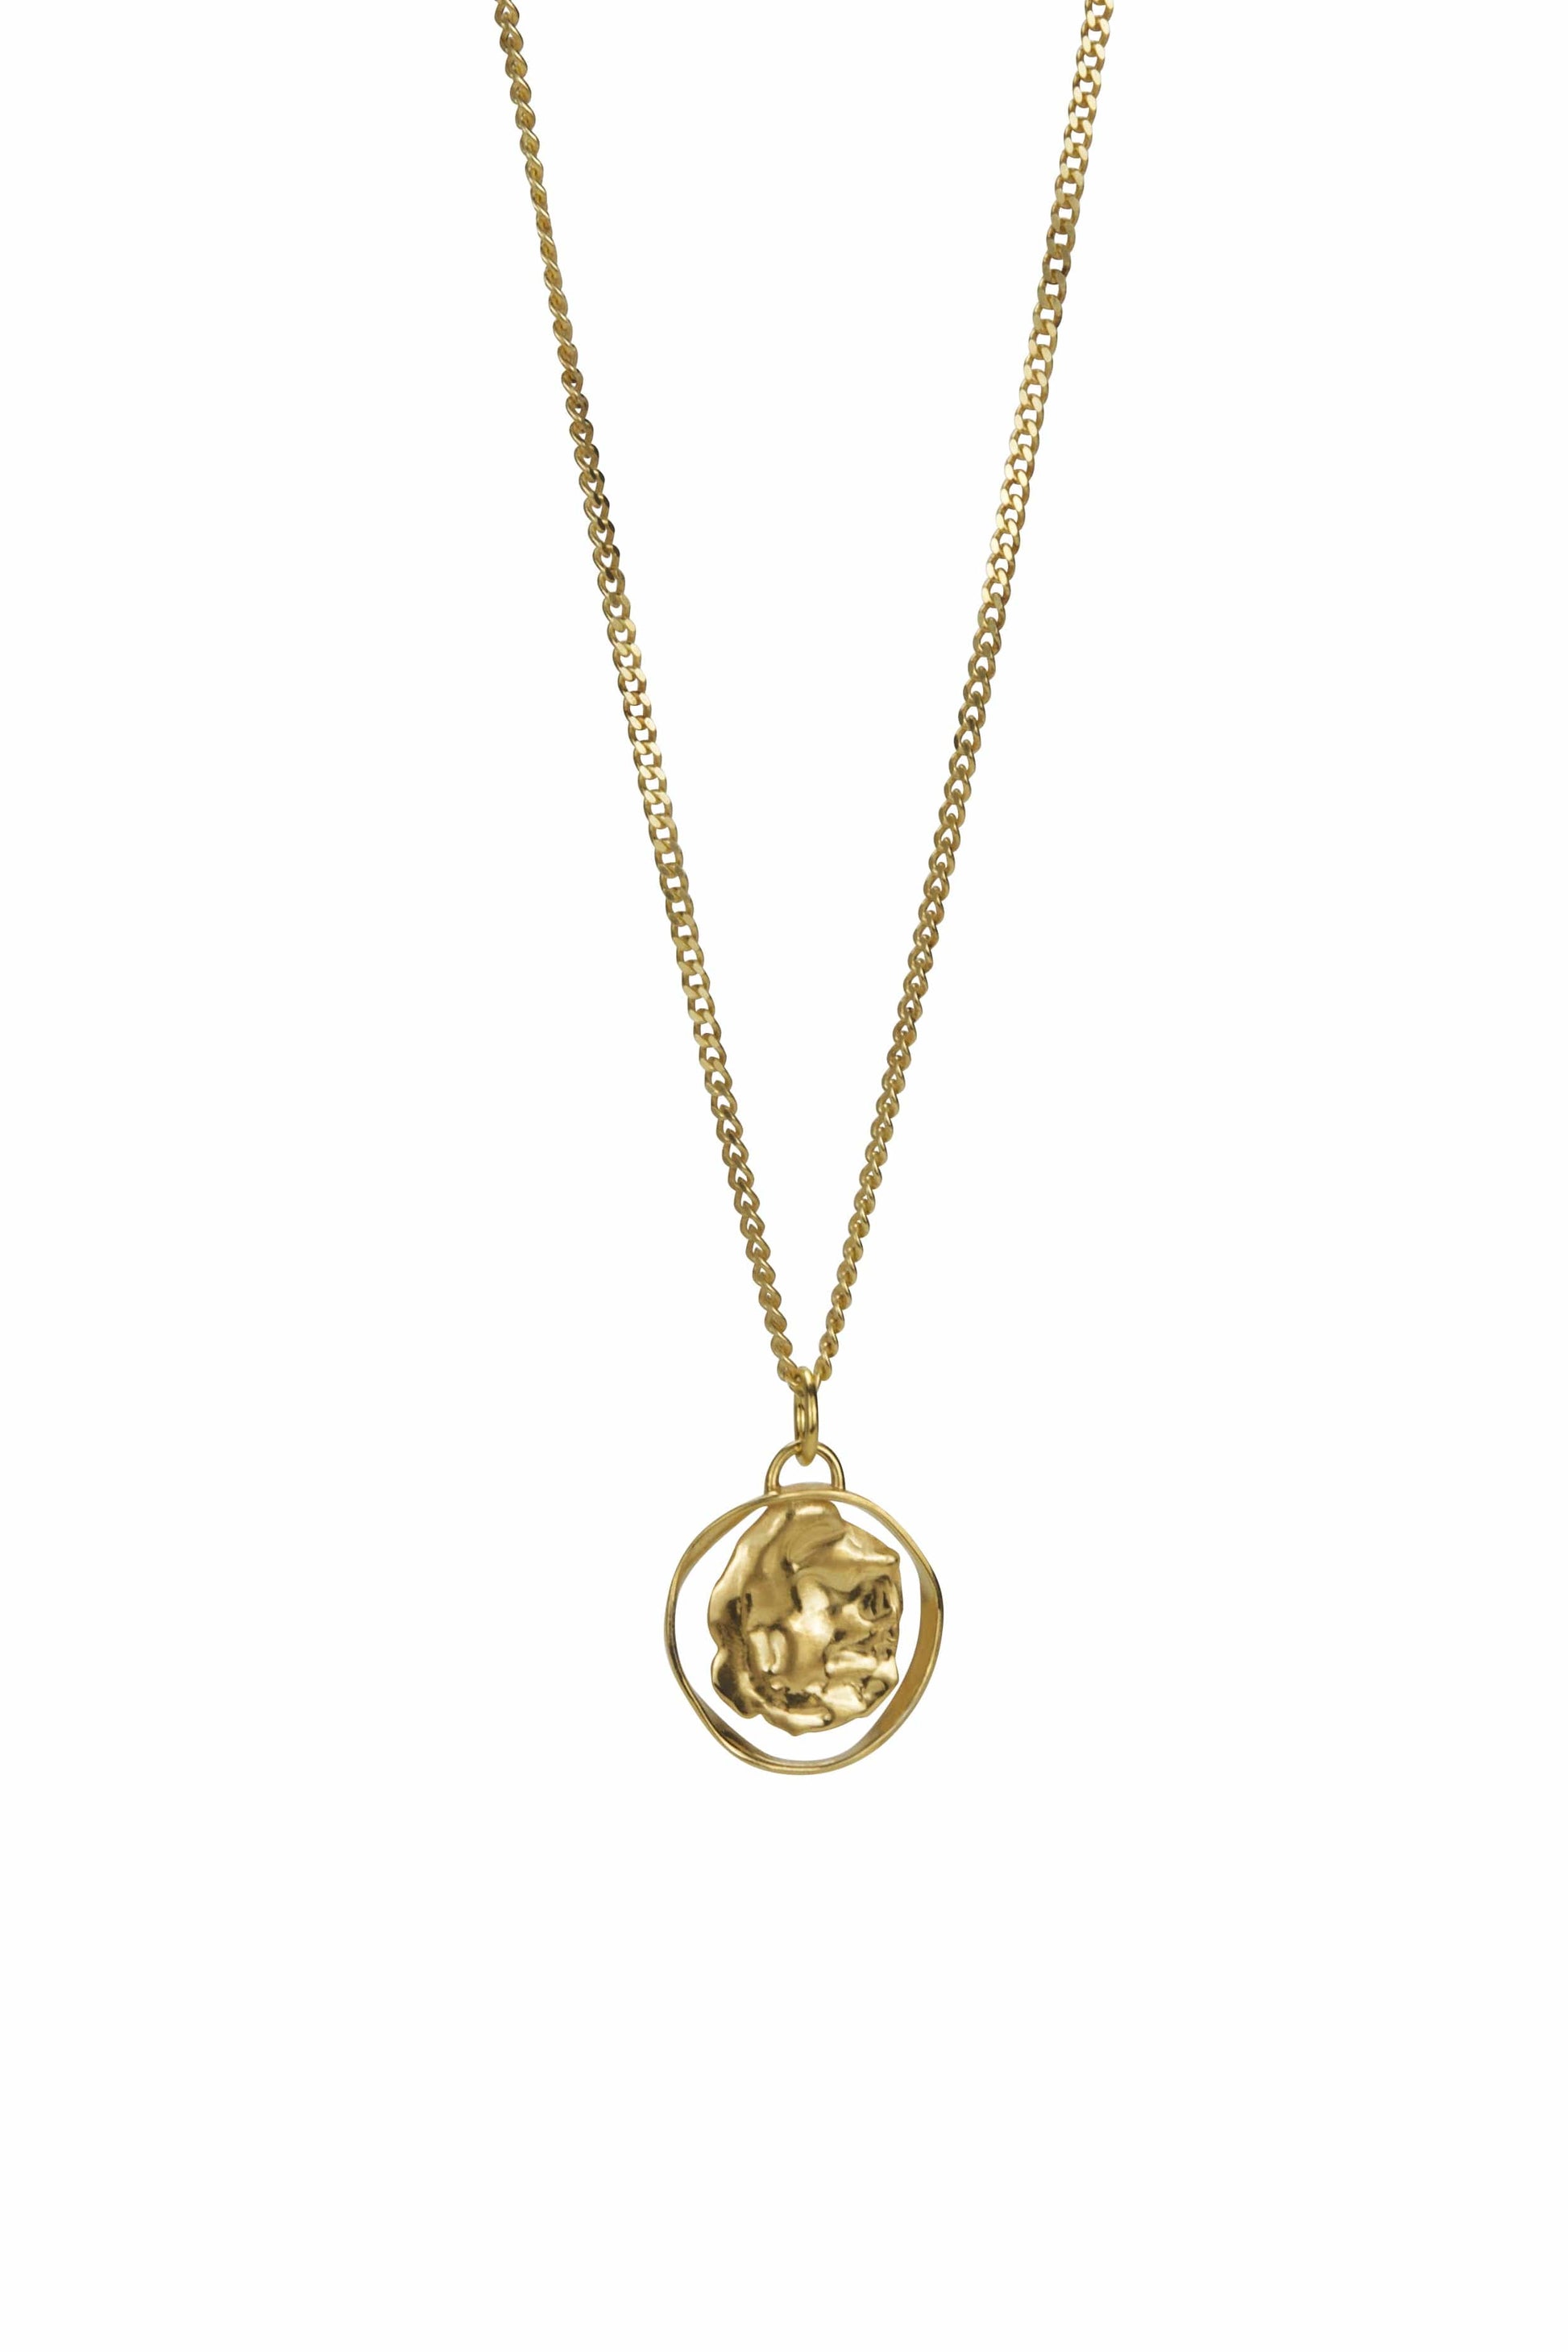 BONVO-Dia Arc Necklace-GOLD